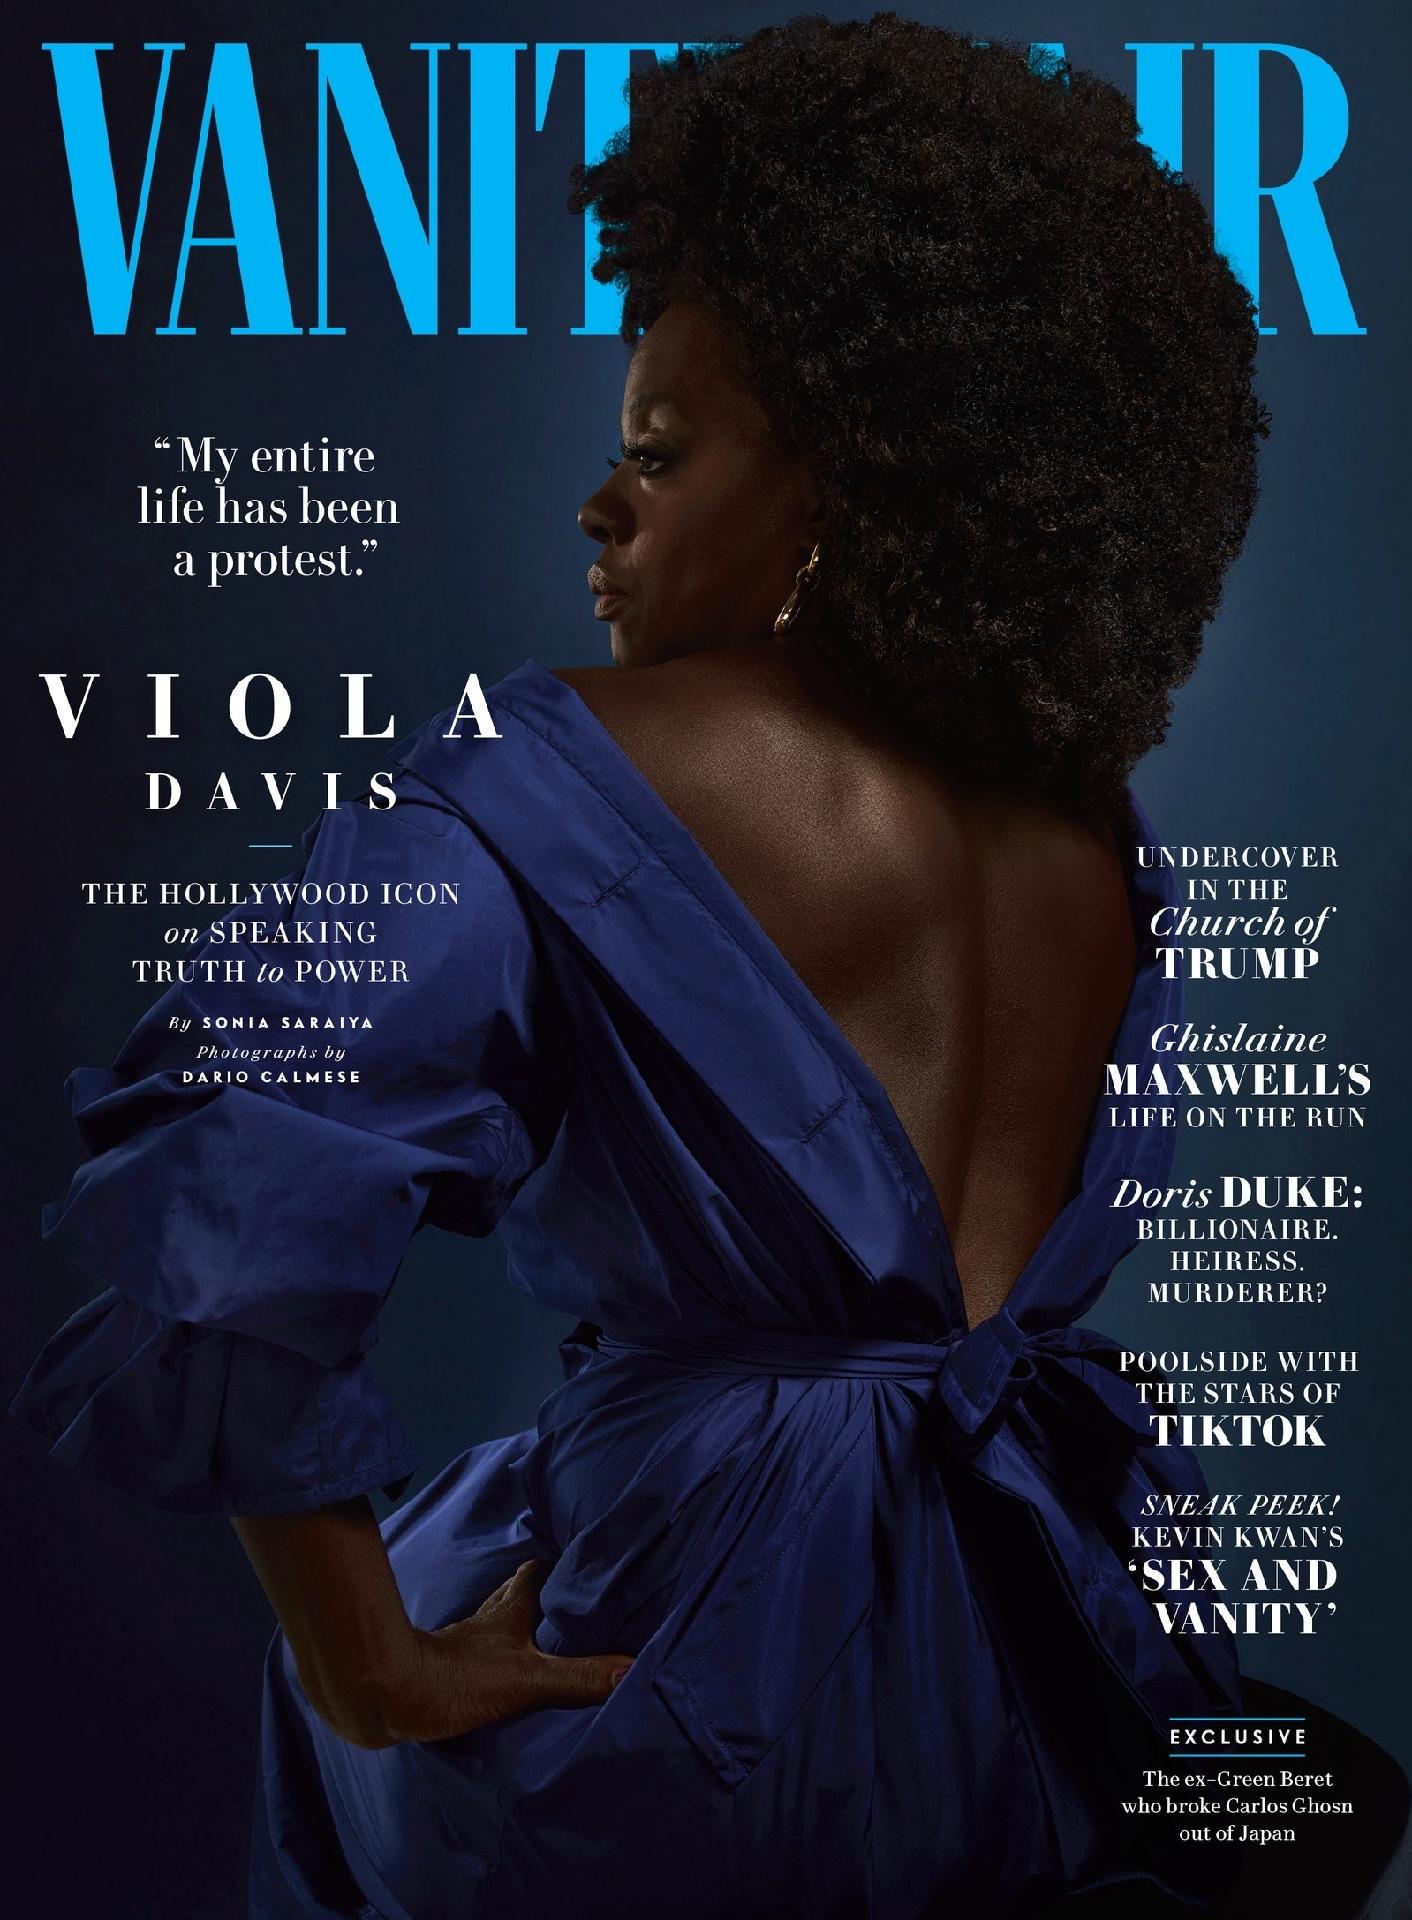 A história de representatividade por trás da Vanity Fair com Viola